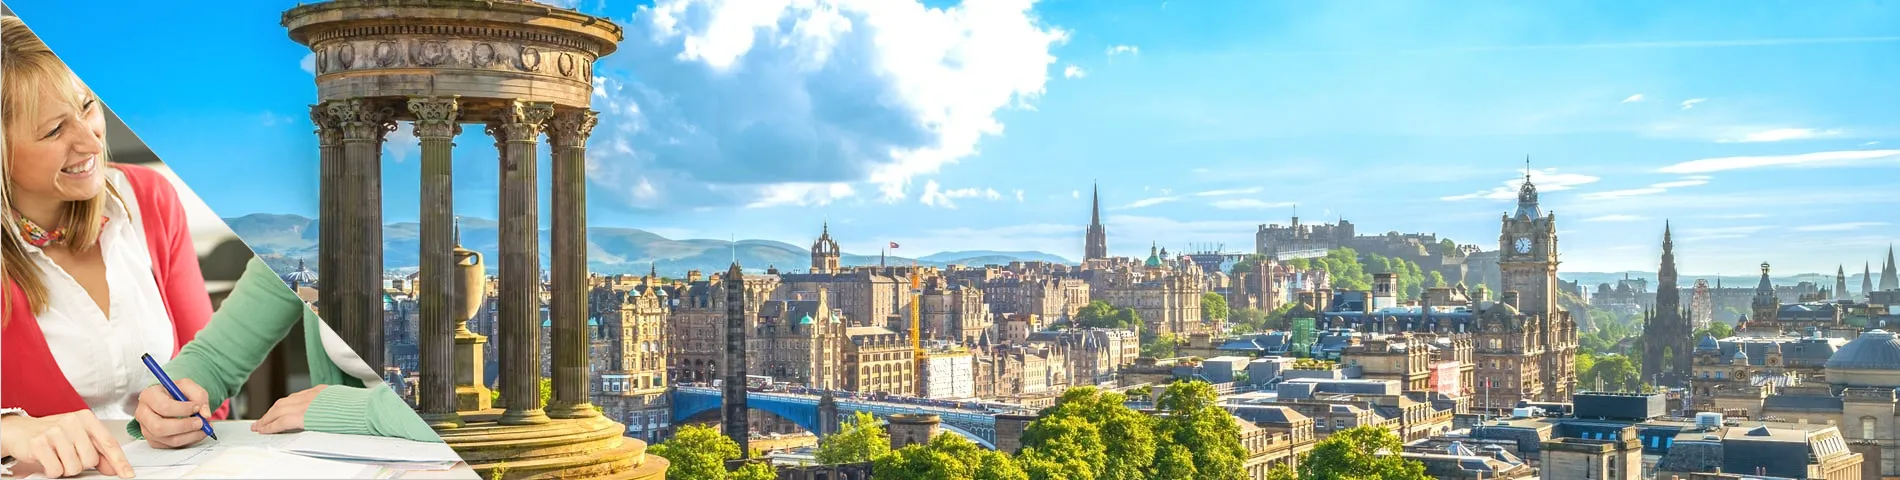 Edinburgh - Studujte a žijte u svého učitele